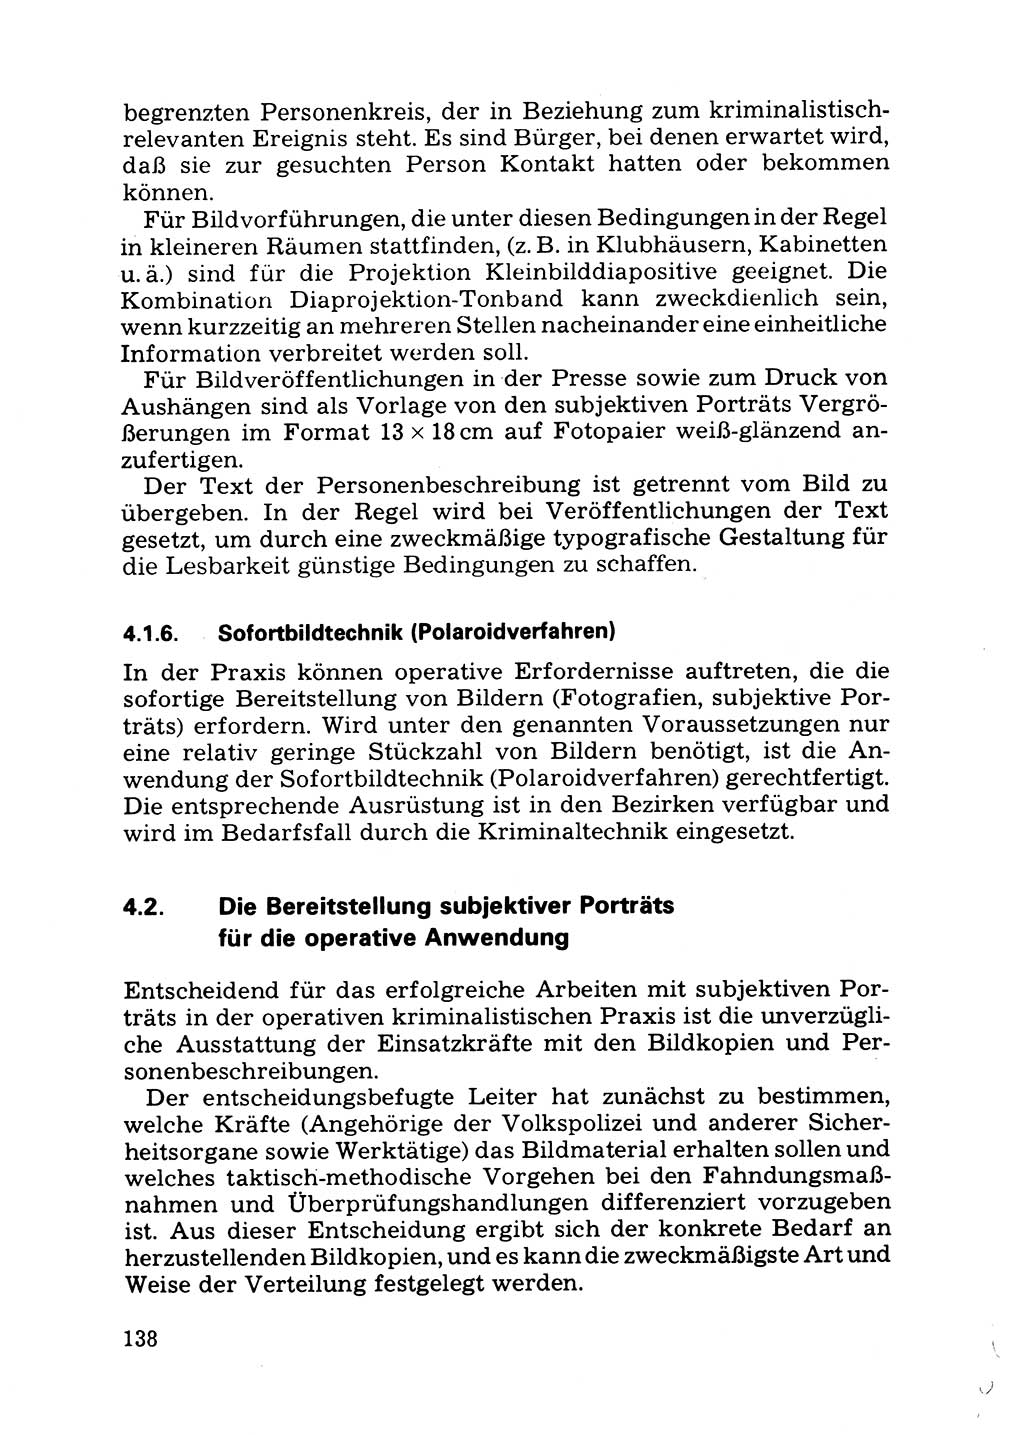 Das subjektive Porträt [Deutsche Demokratische Republik (DDR)] 1981, Seite 138 (Subj. Port. DDR 1981, S. 138)